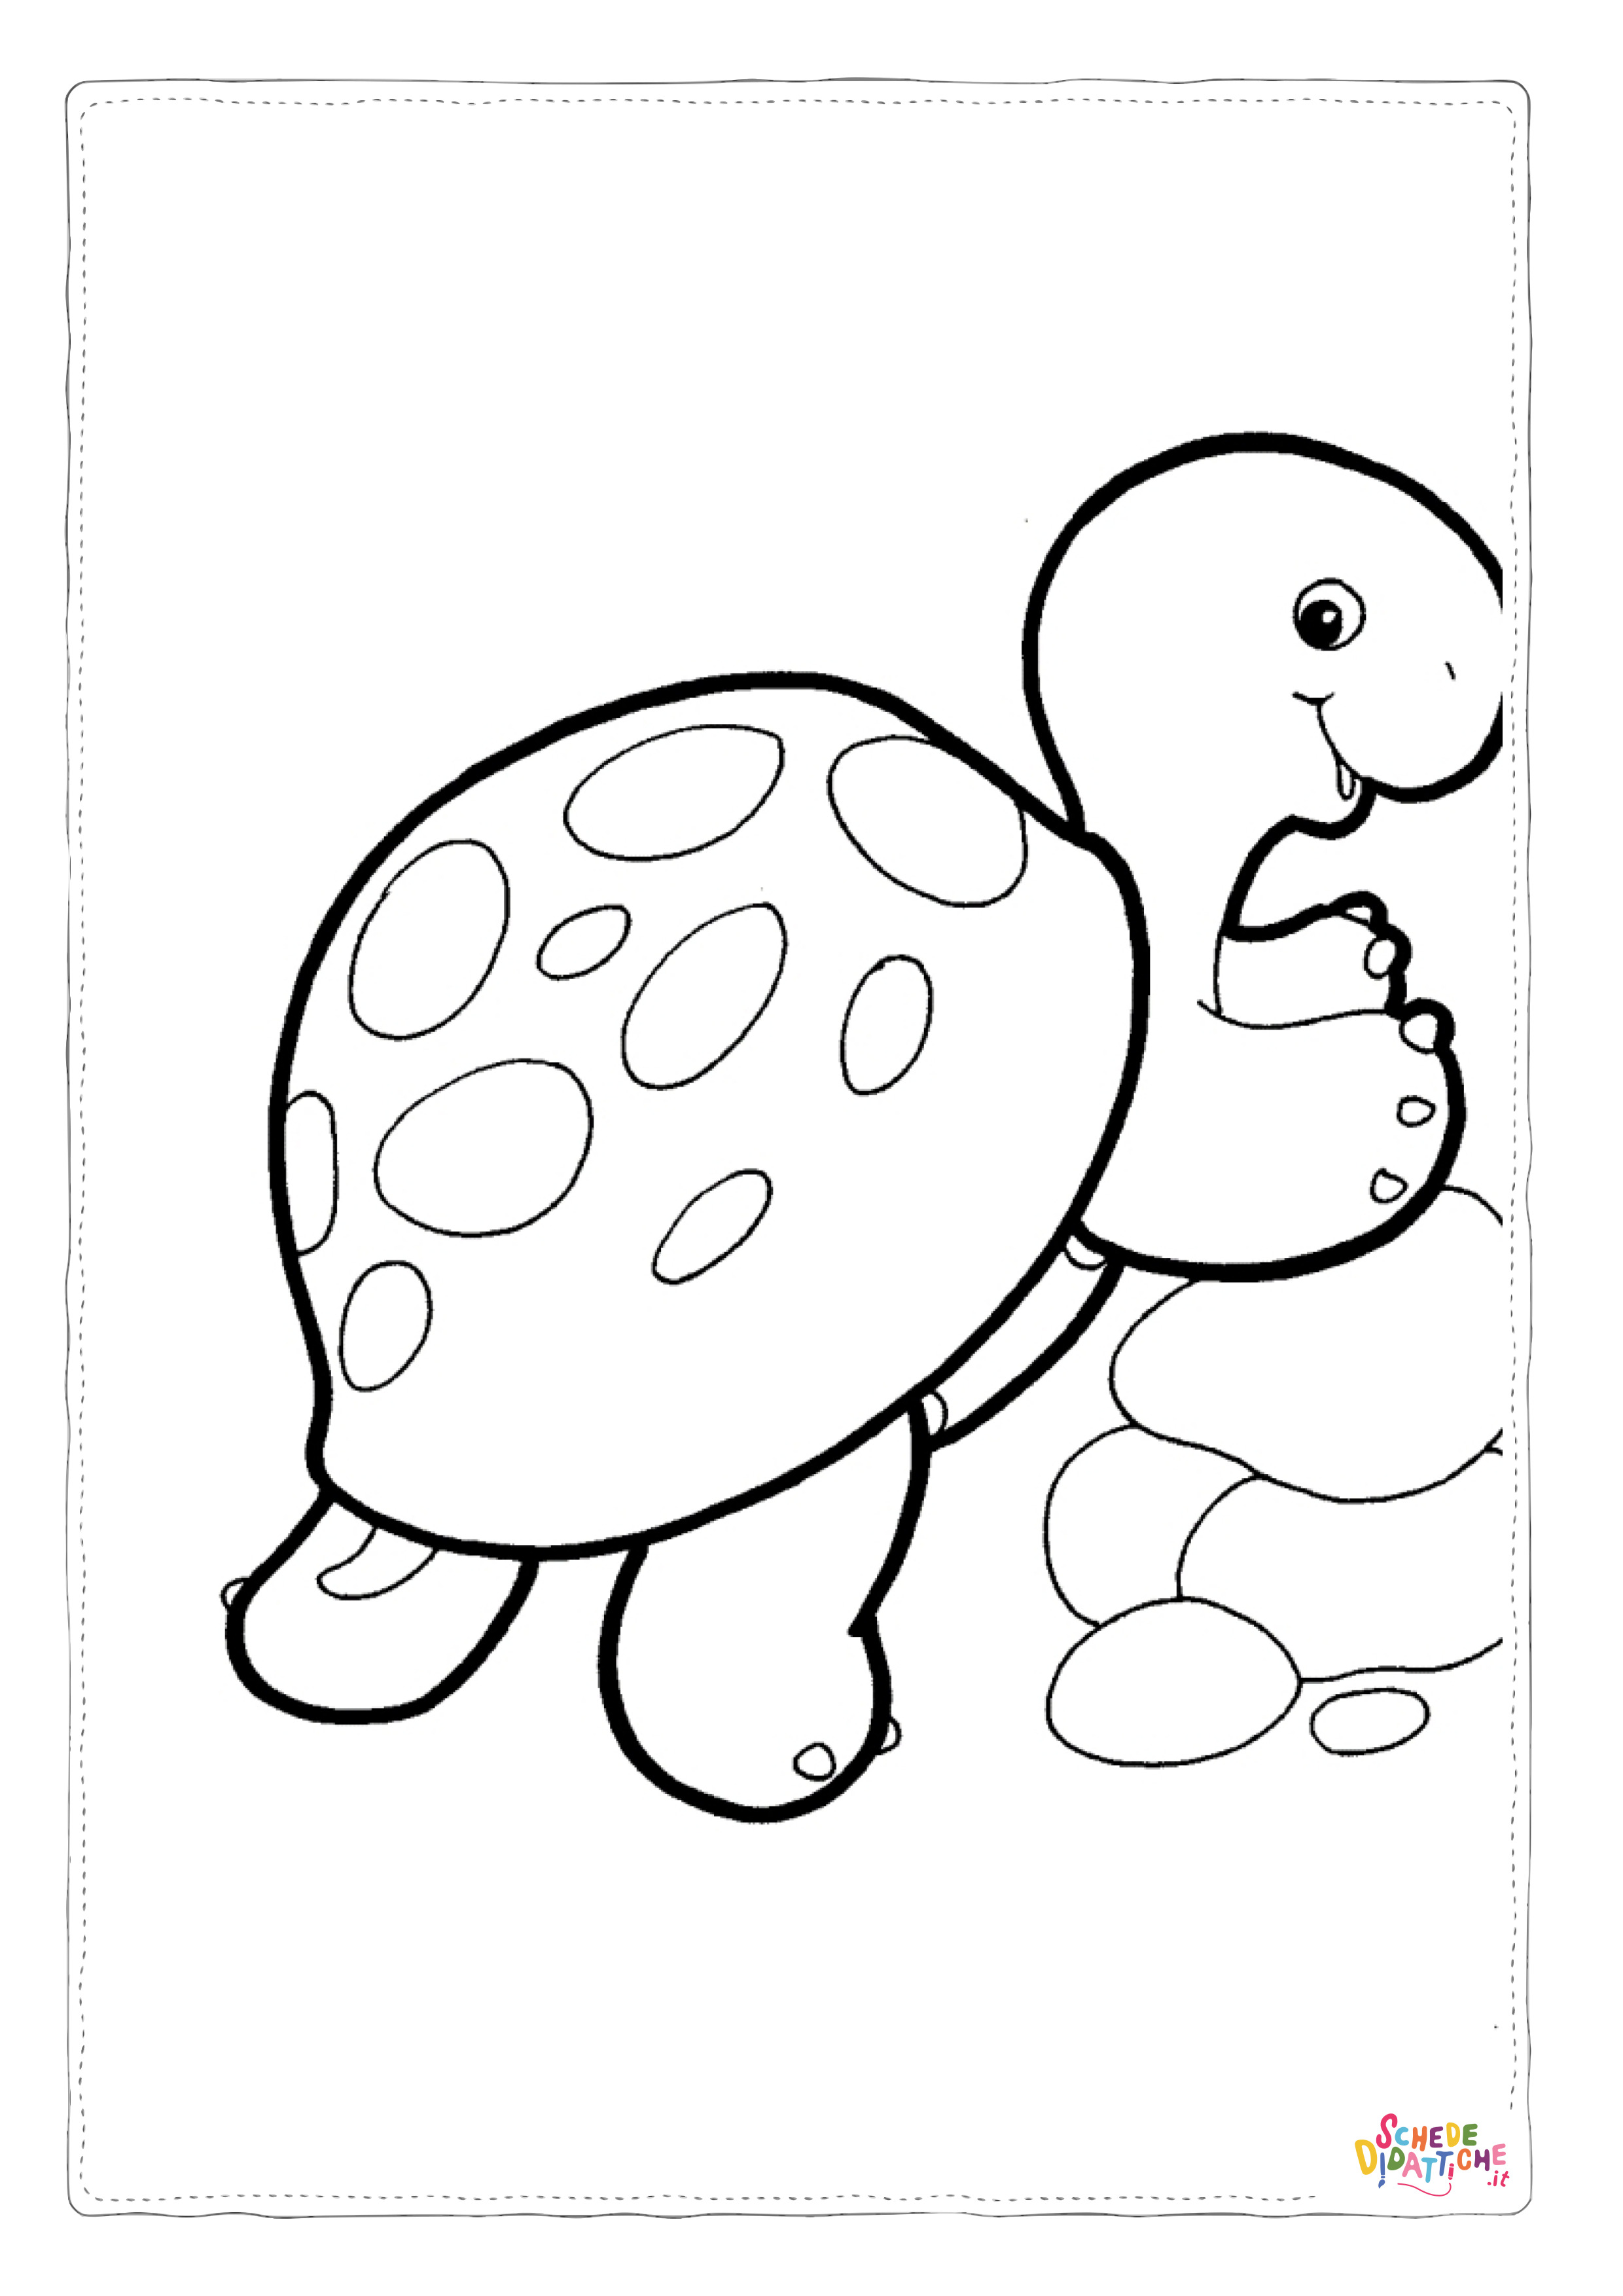 Disegno di tartaruga di terra da stampare e colorare 12